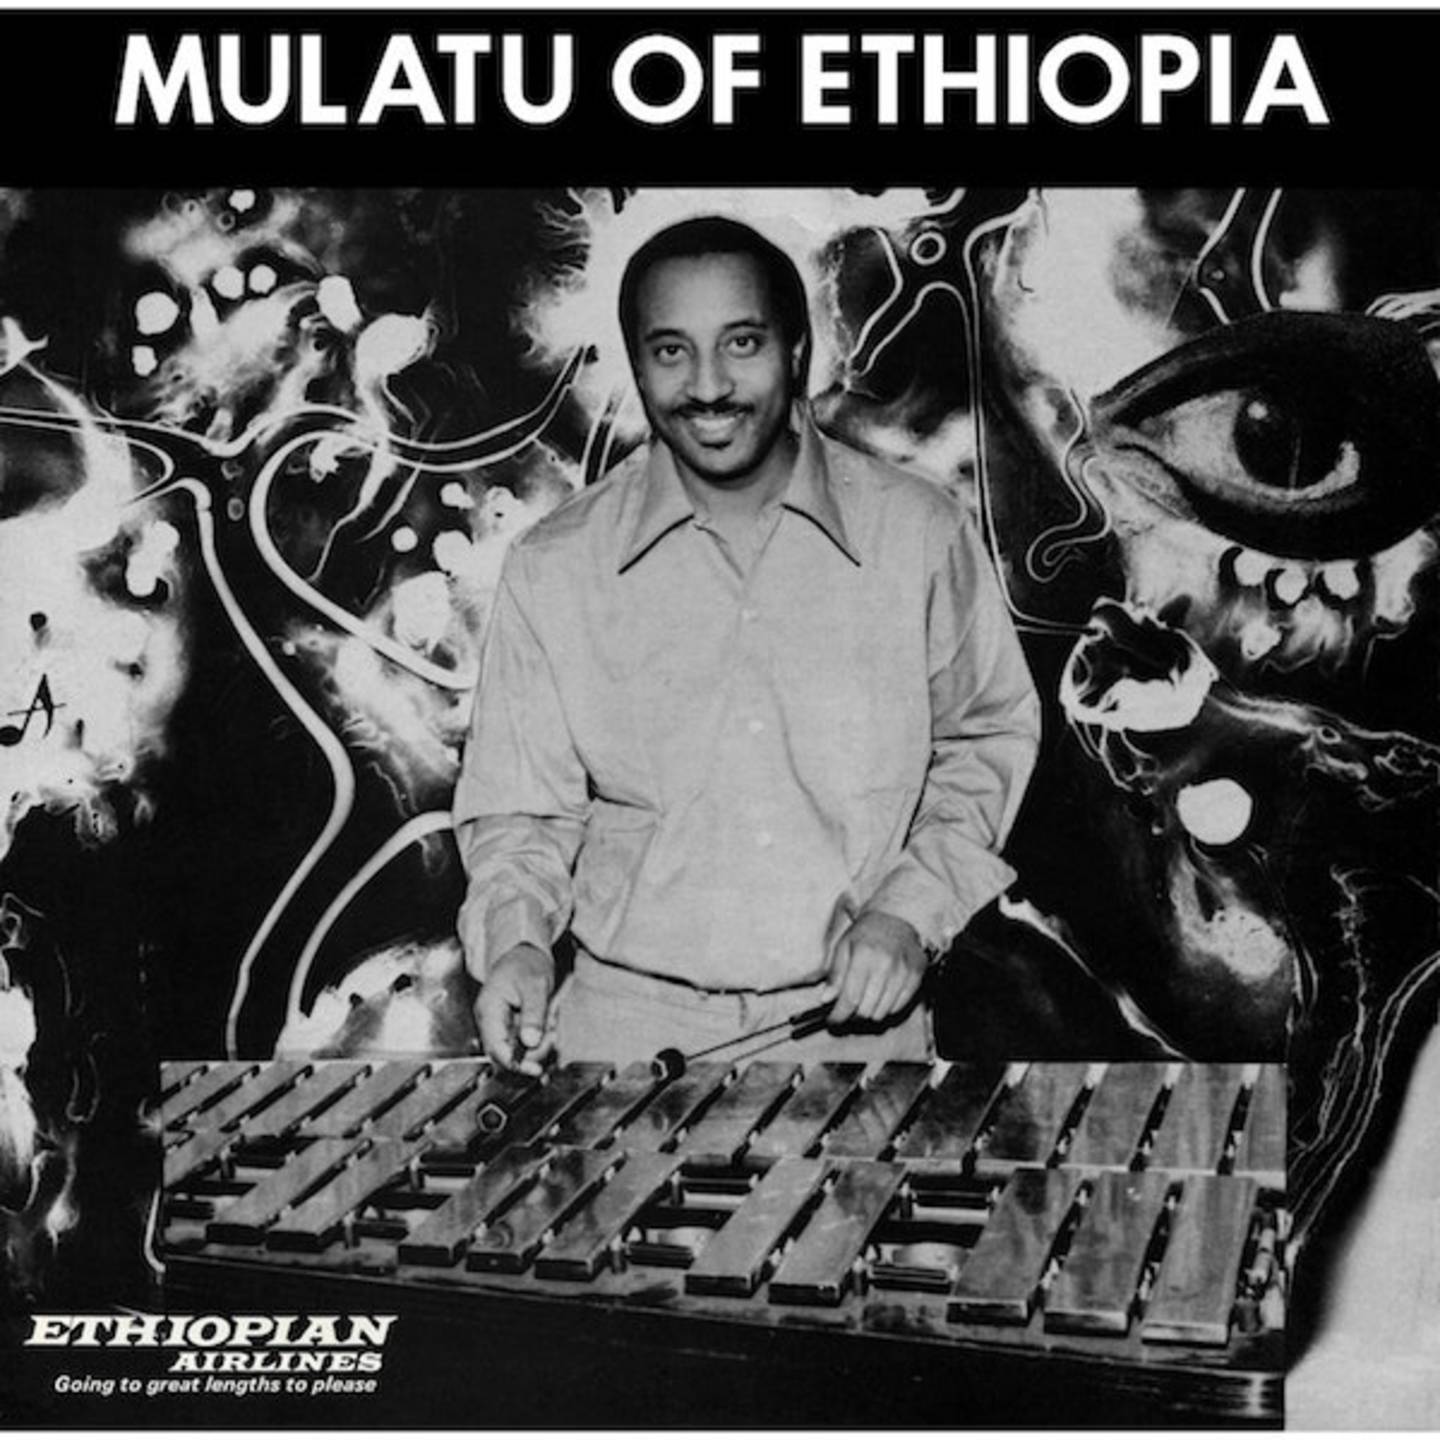 MULATU ASTATKE - Mulatu of Ethiopia LP